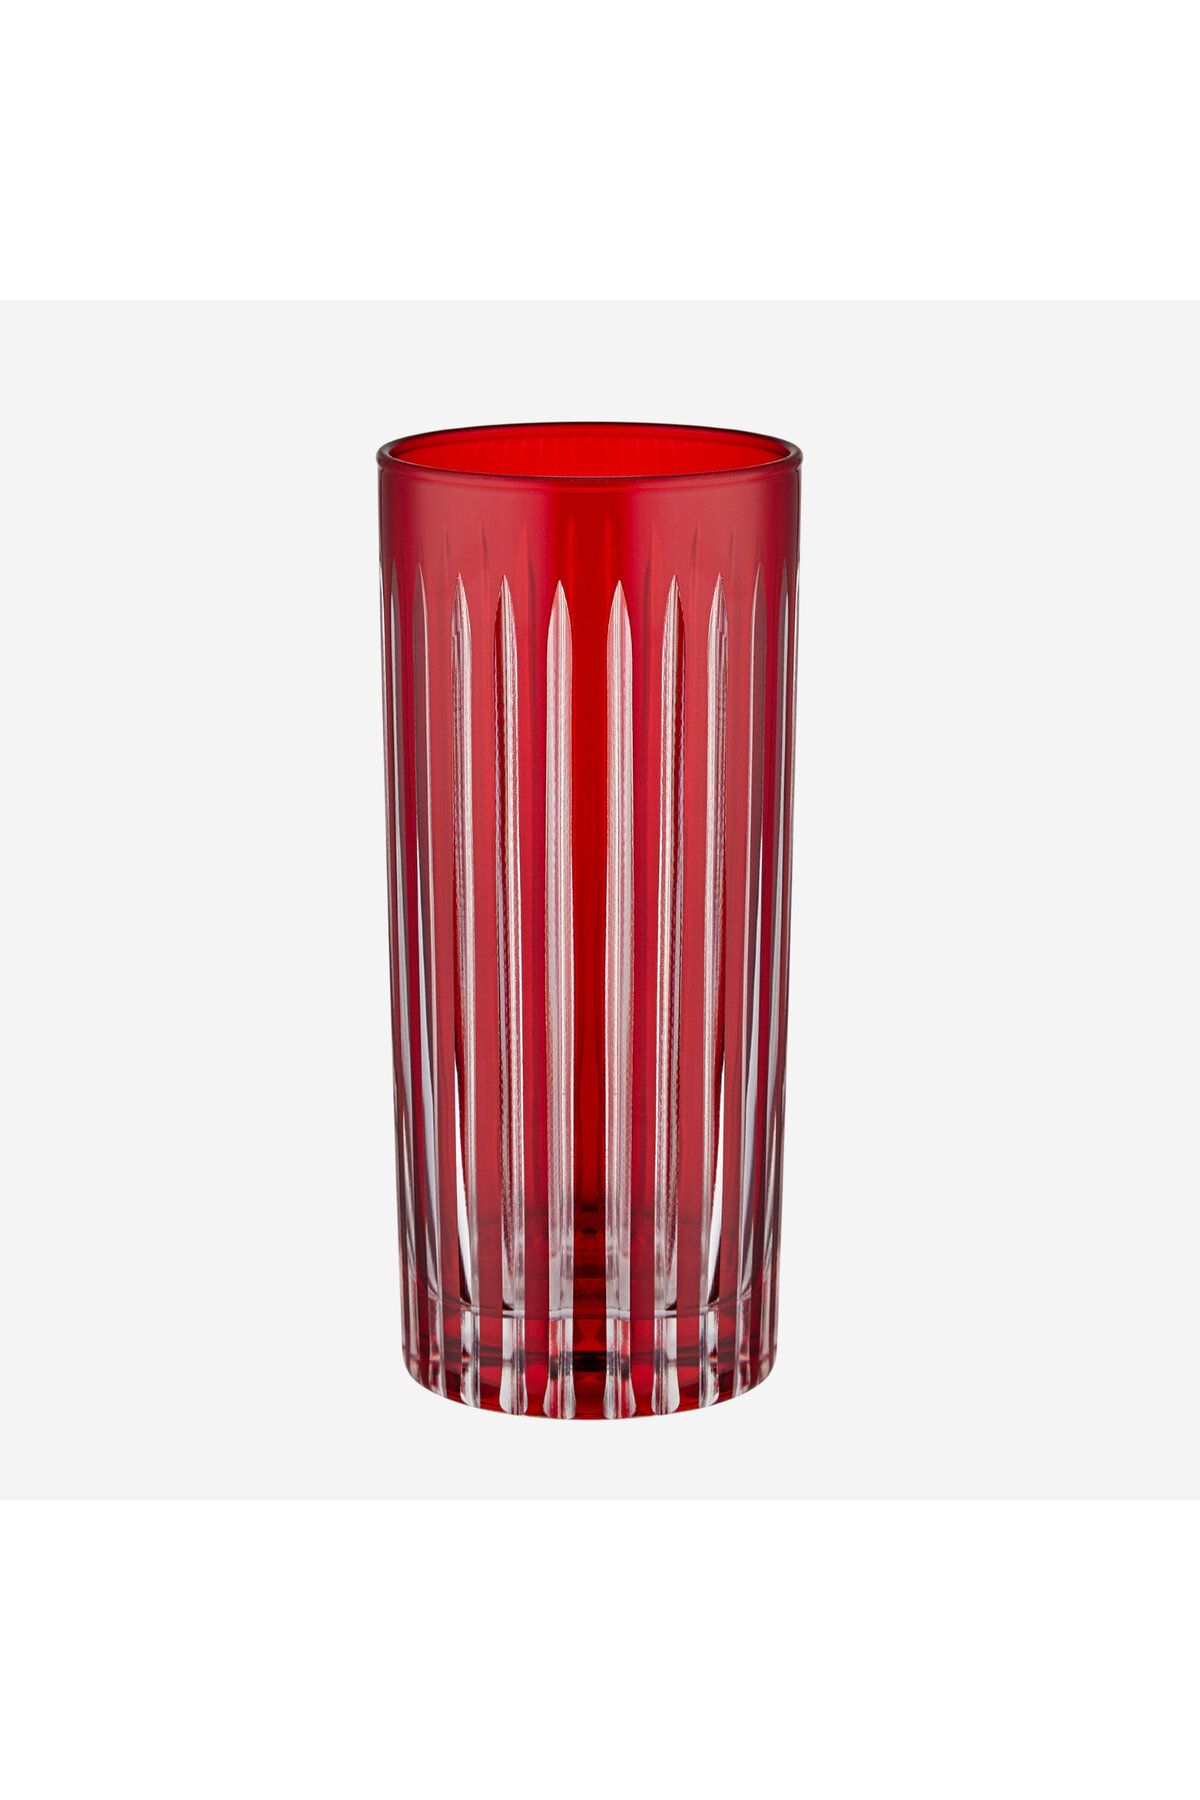 CHIARA ALESSI Stella Kırmızı Cam Su Bardağı 485 ml